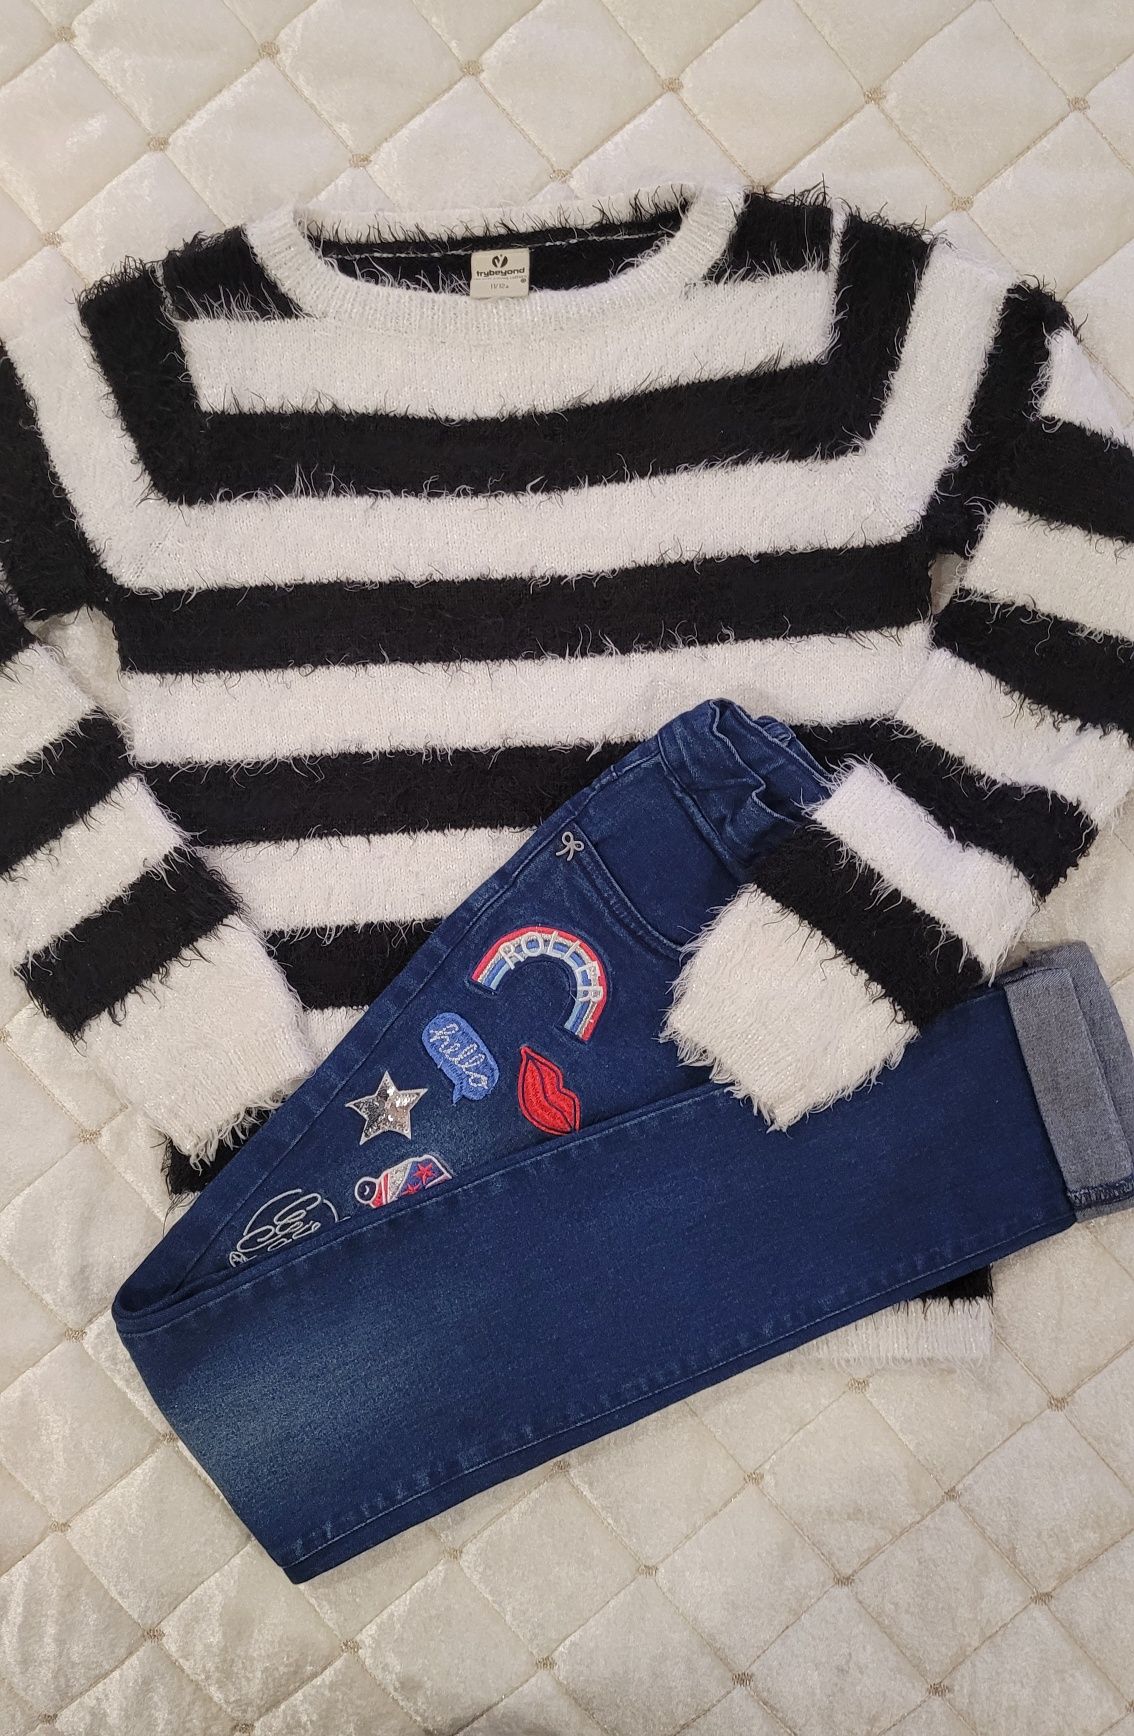 Гольф светр світшот теплий на дівчинку, теплі штани, джинси  штани.